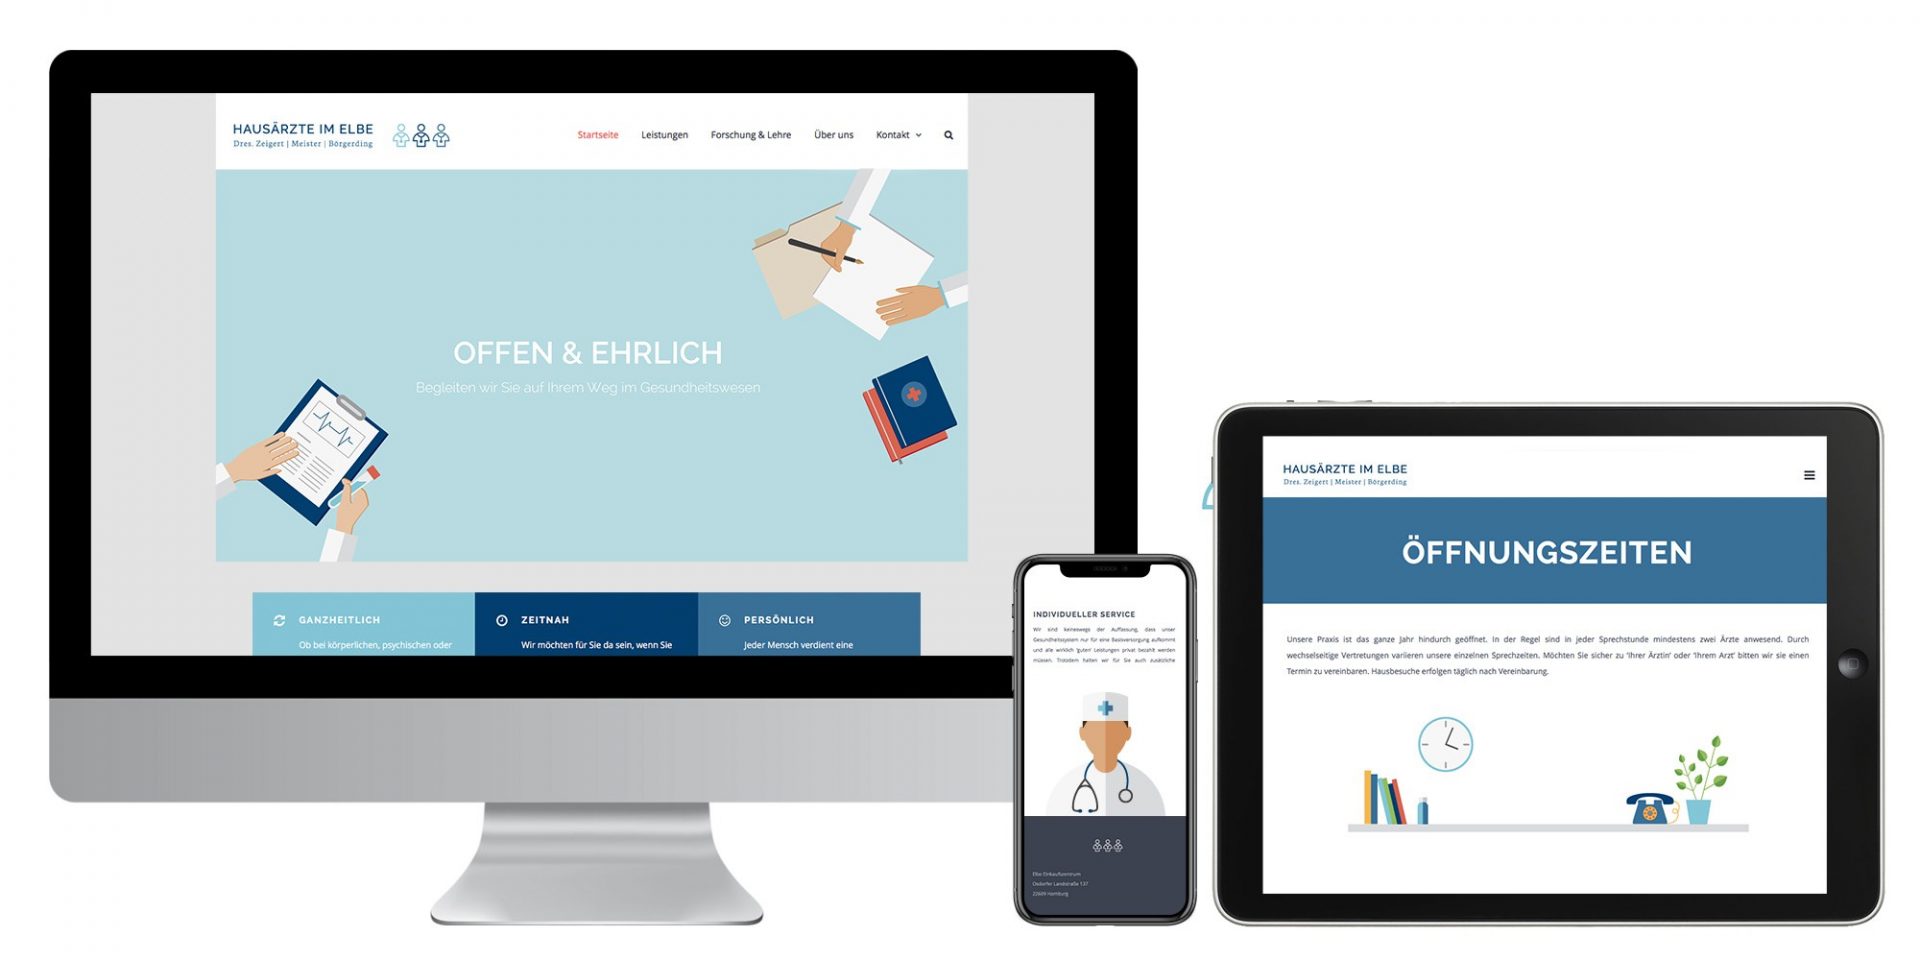 Darstellung der Website der Hausärzte im Elbe auf Desktop, Mobile und Tablet